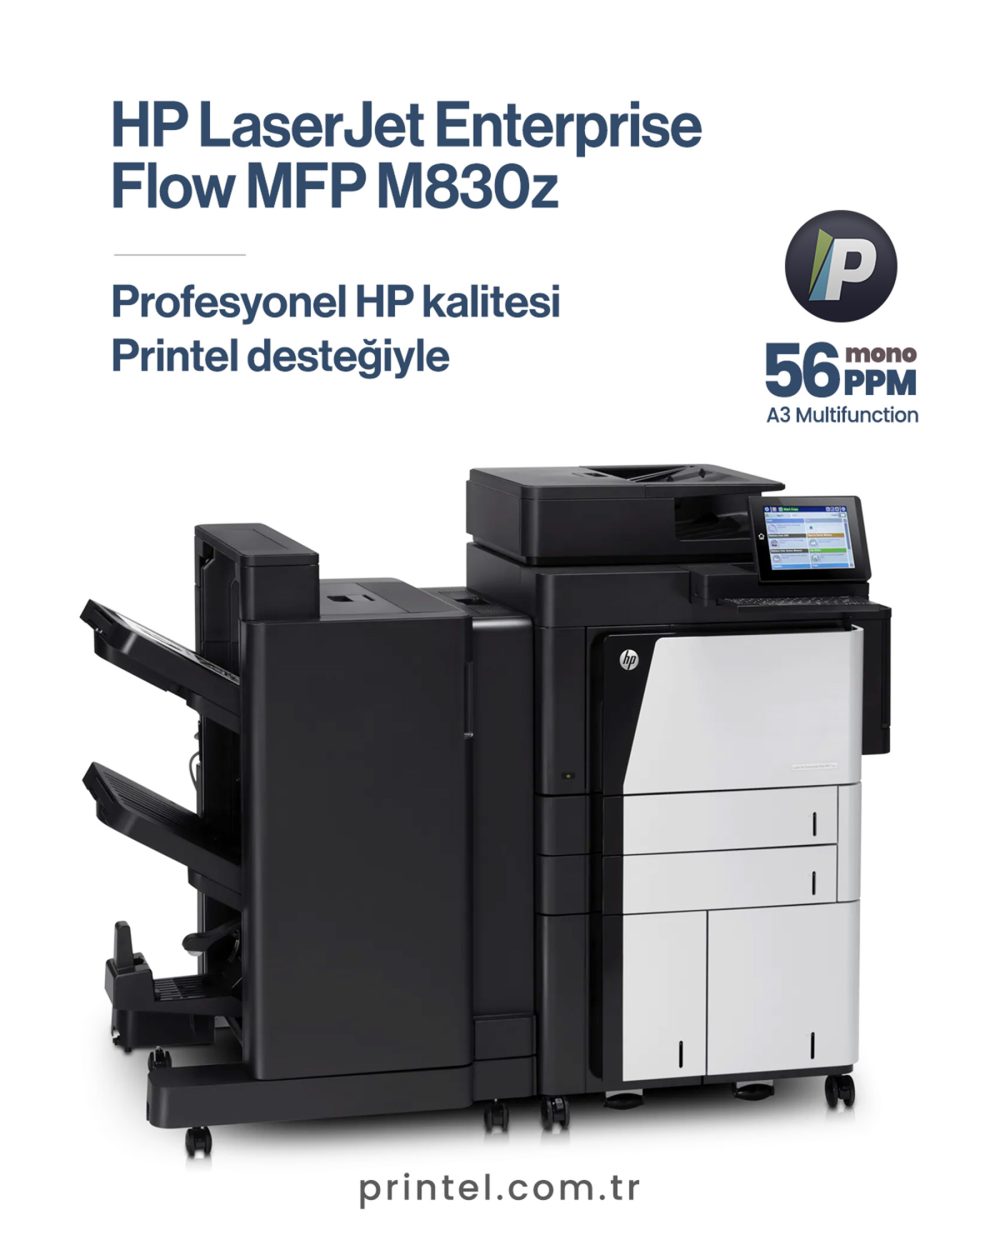 HP LaserJet Enterprise flow MFP M830z 8